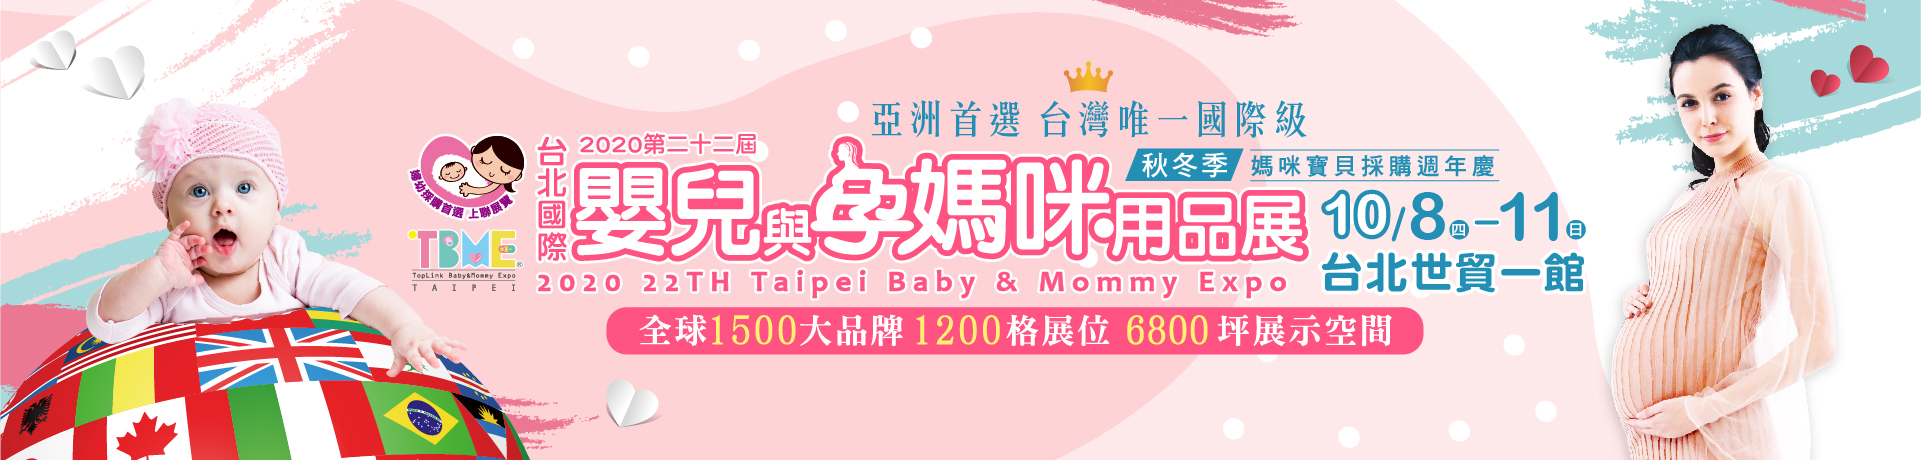 台北國際嬰兒與孕媽咪用品展 春夏季